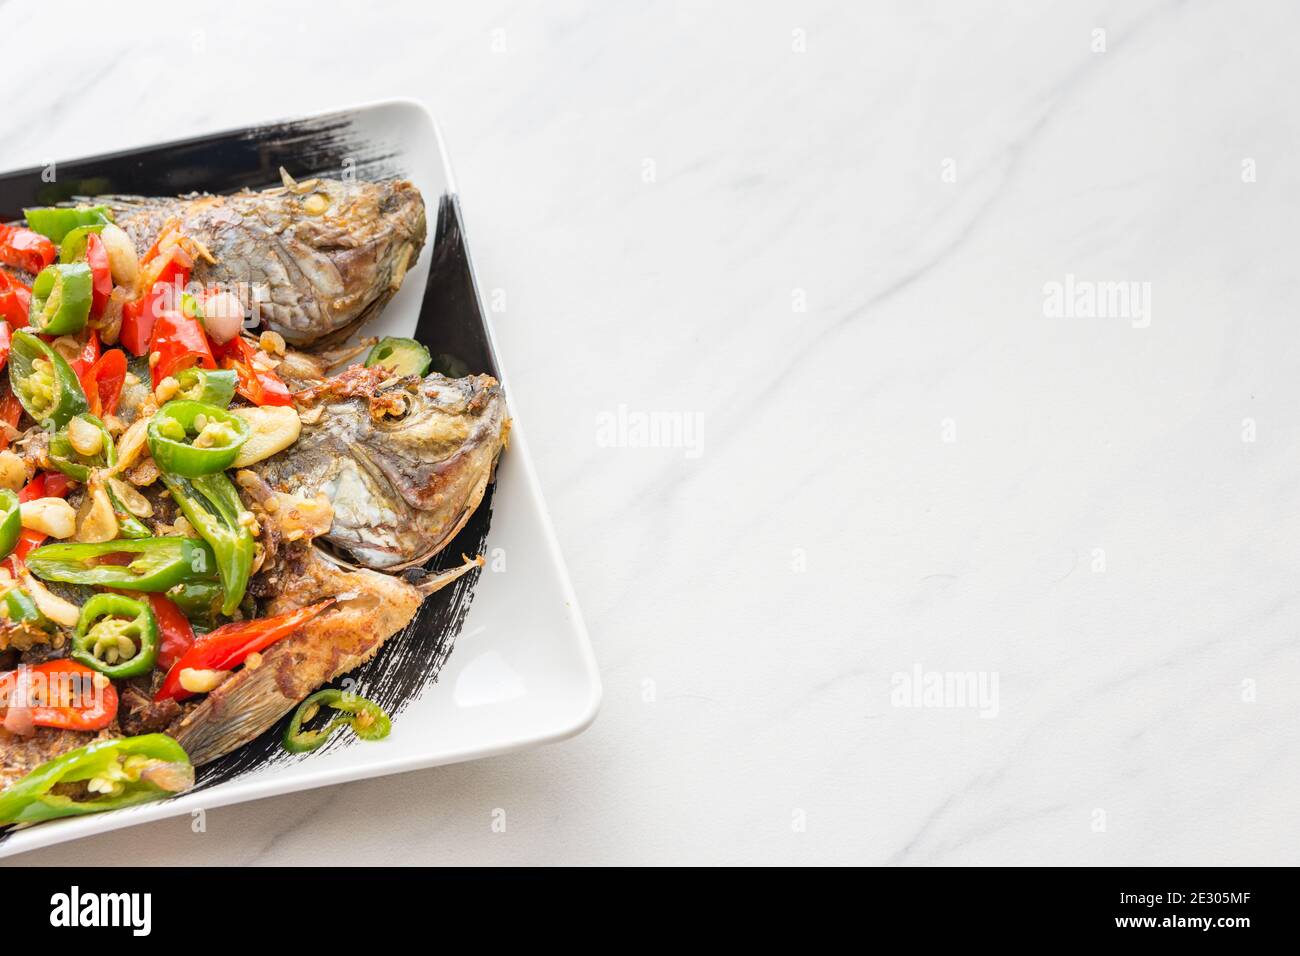 Poisson entier grillé avec salade épicée, cuisine et cuisine de style asiatique - espace de texte pour ajouter du texte. Banque D'Images